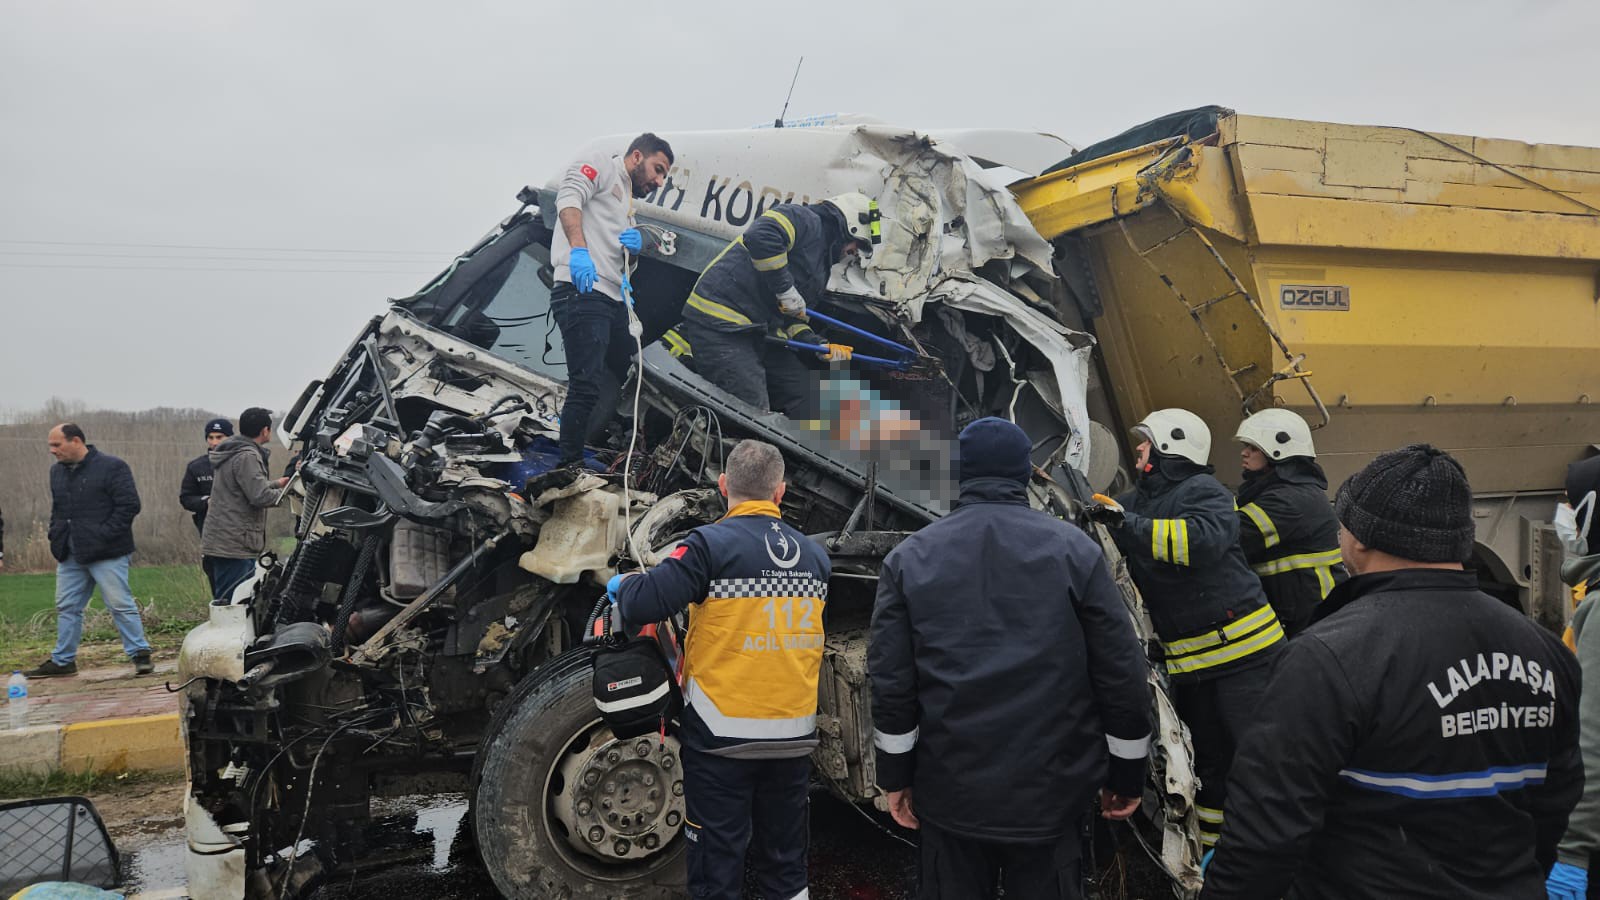 Konya'dan çalışmak için gittiler: Kazada biri öldü